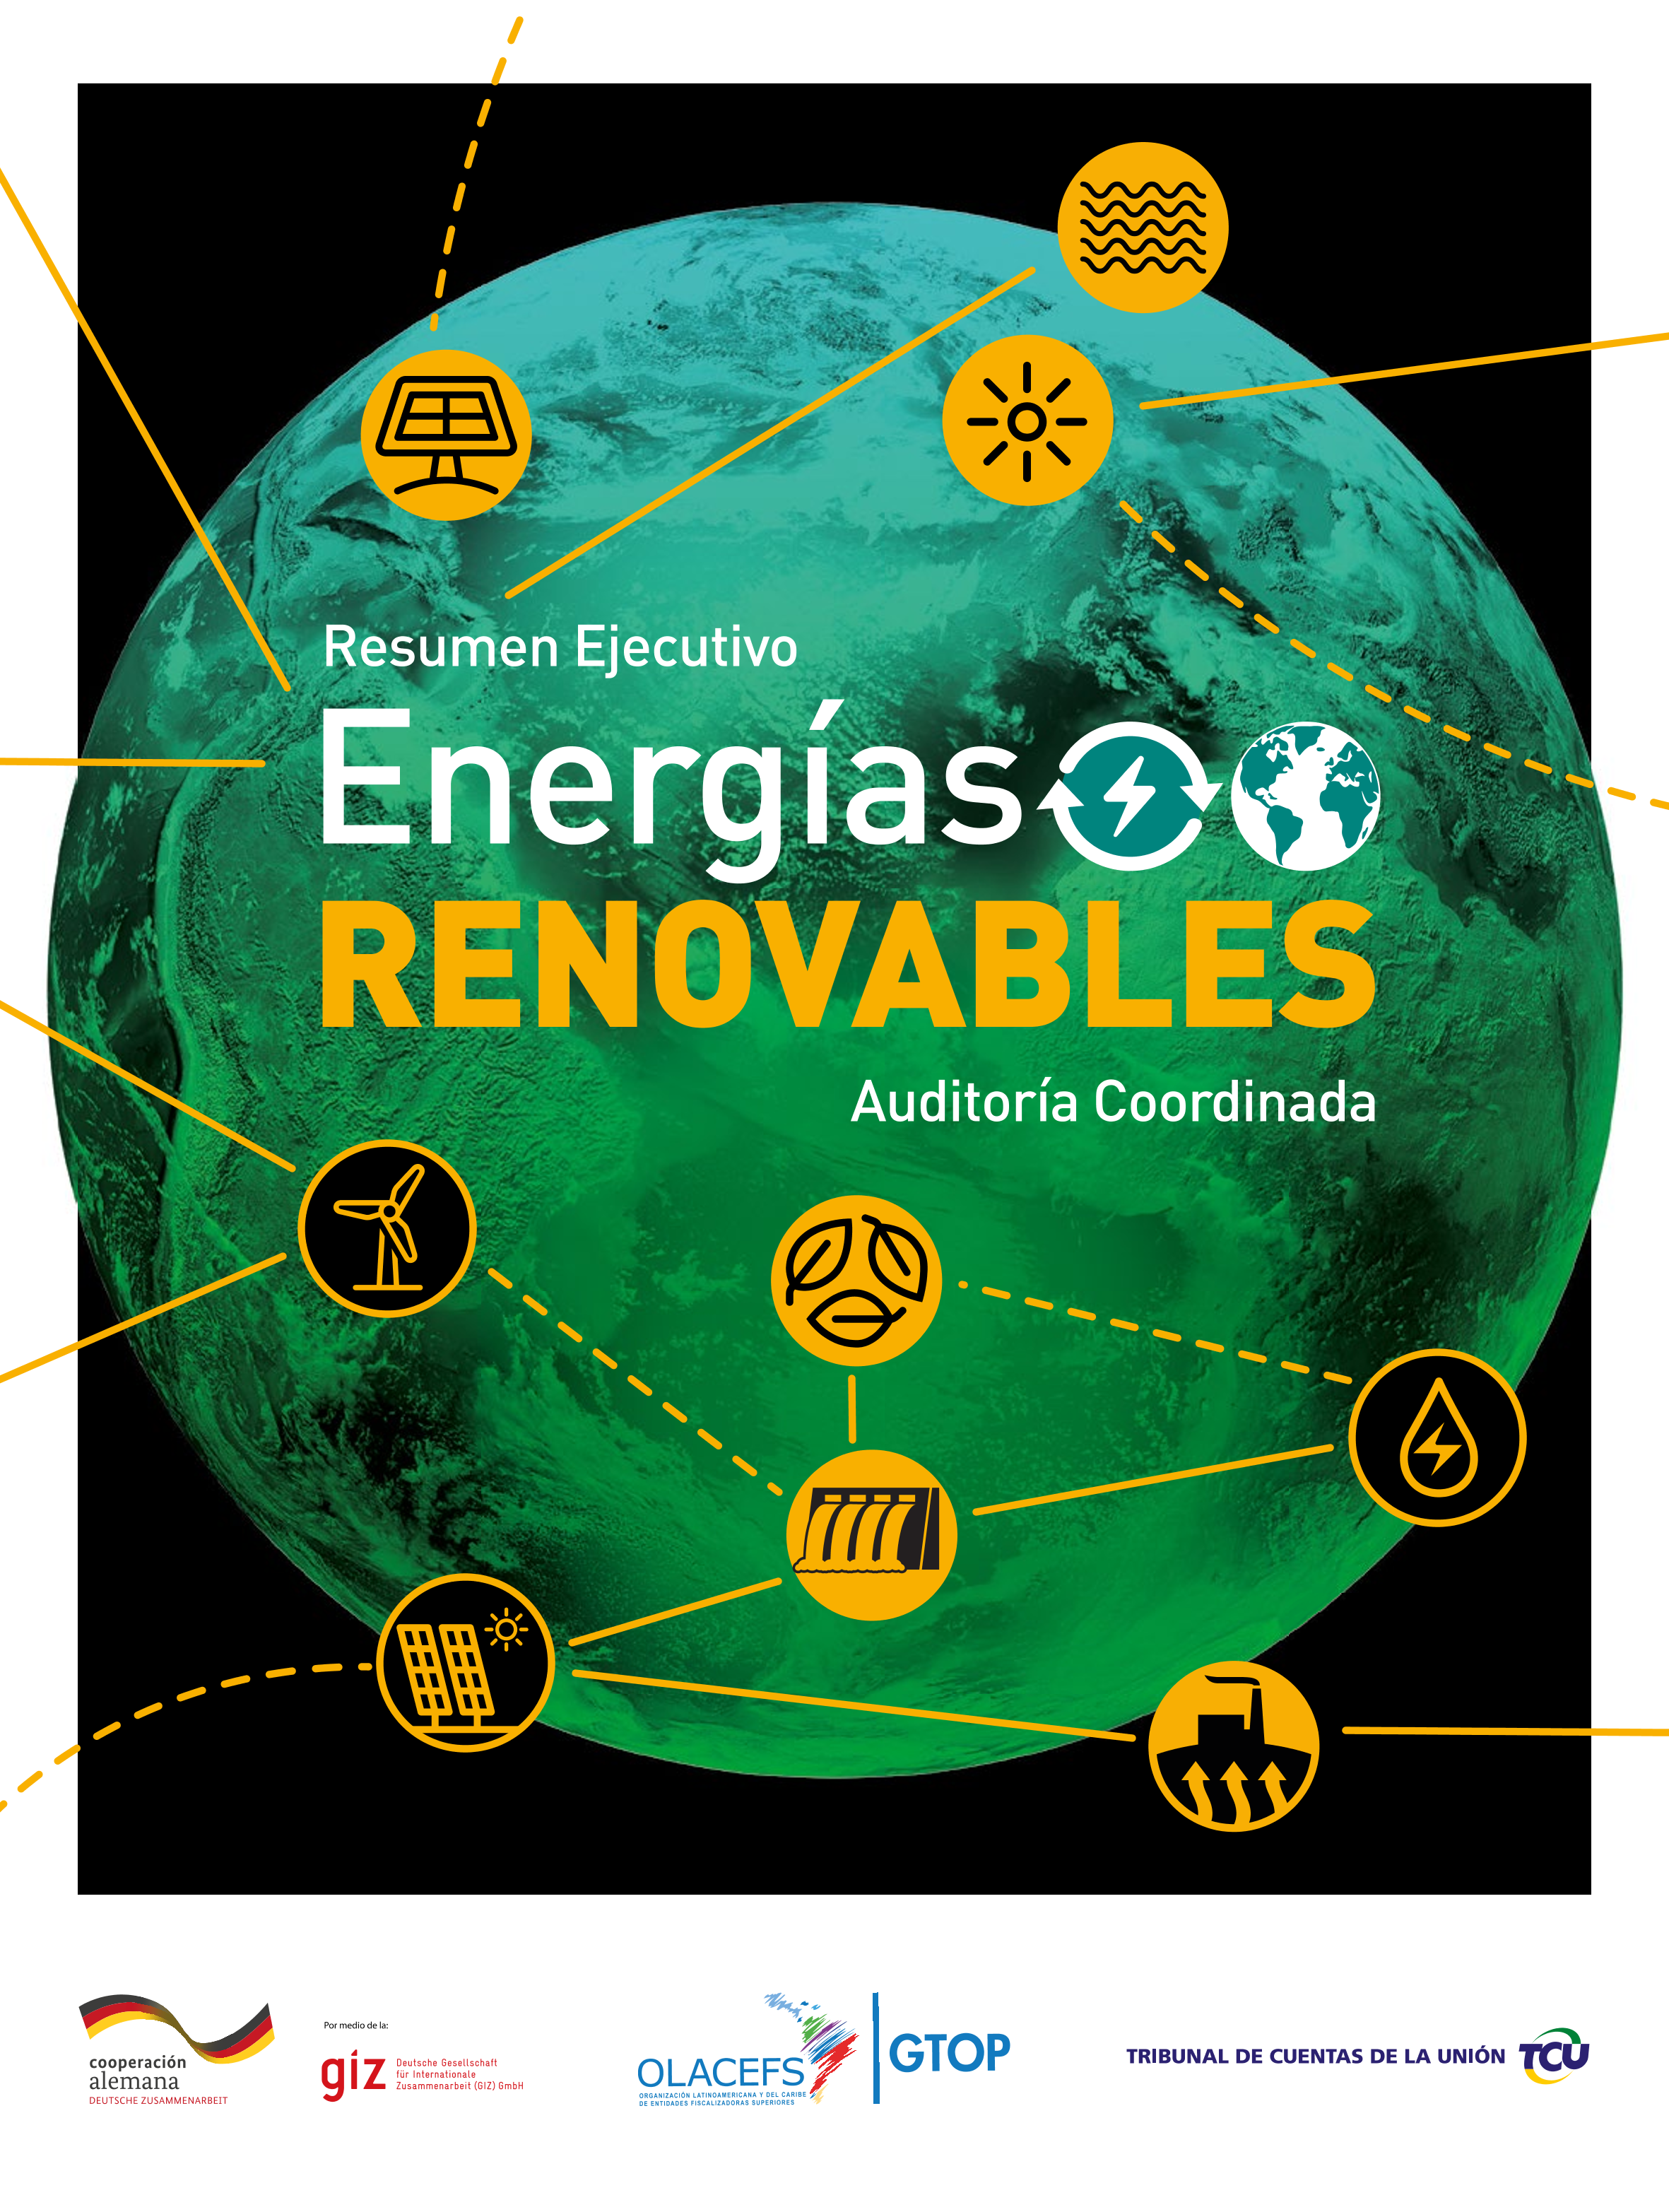 energias_renovaveis_espanhol.png